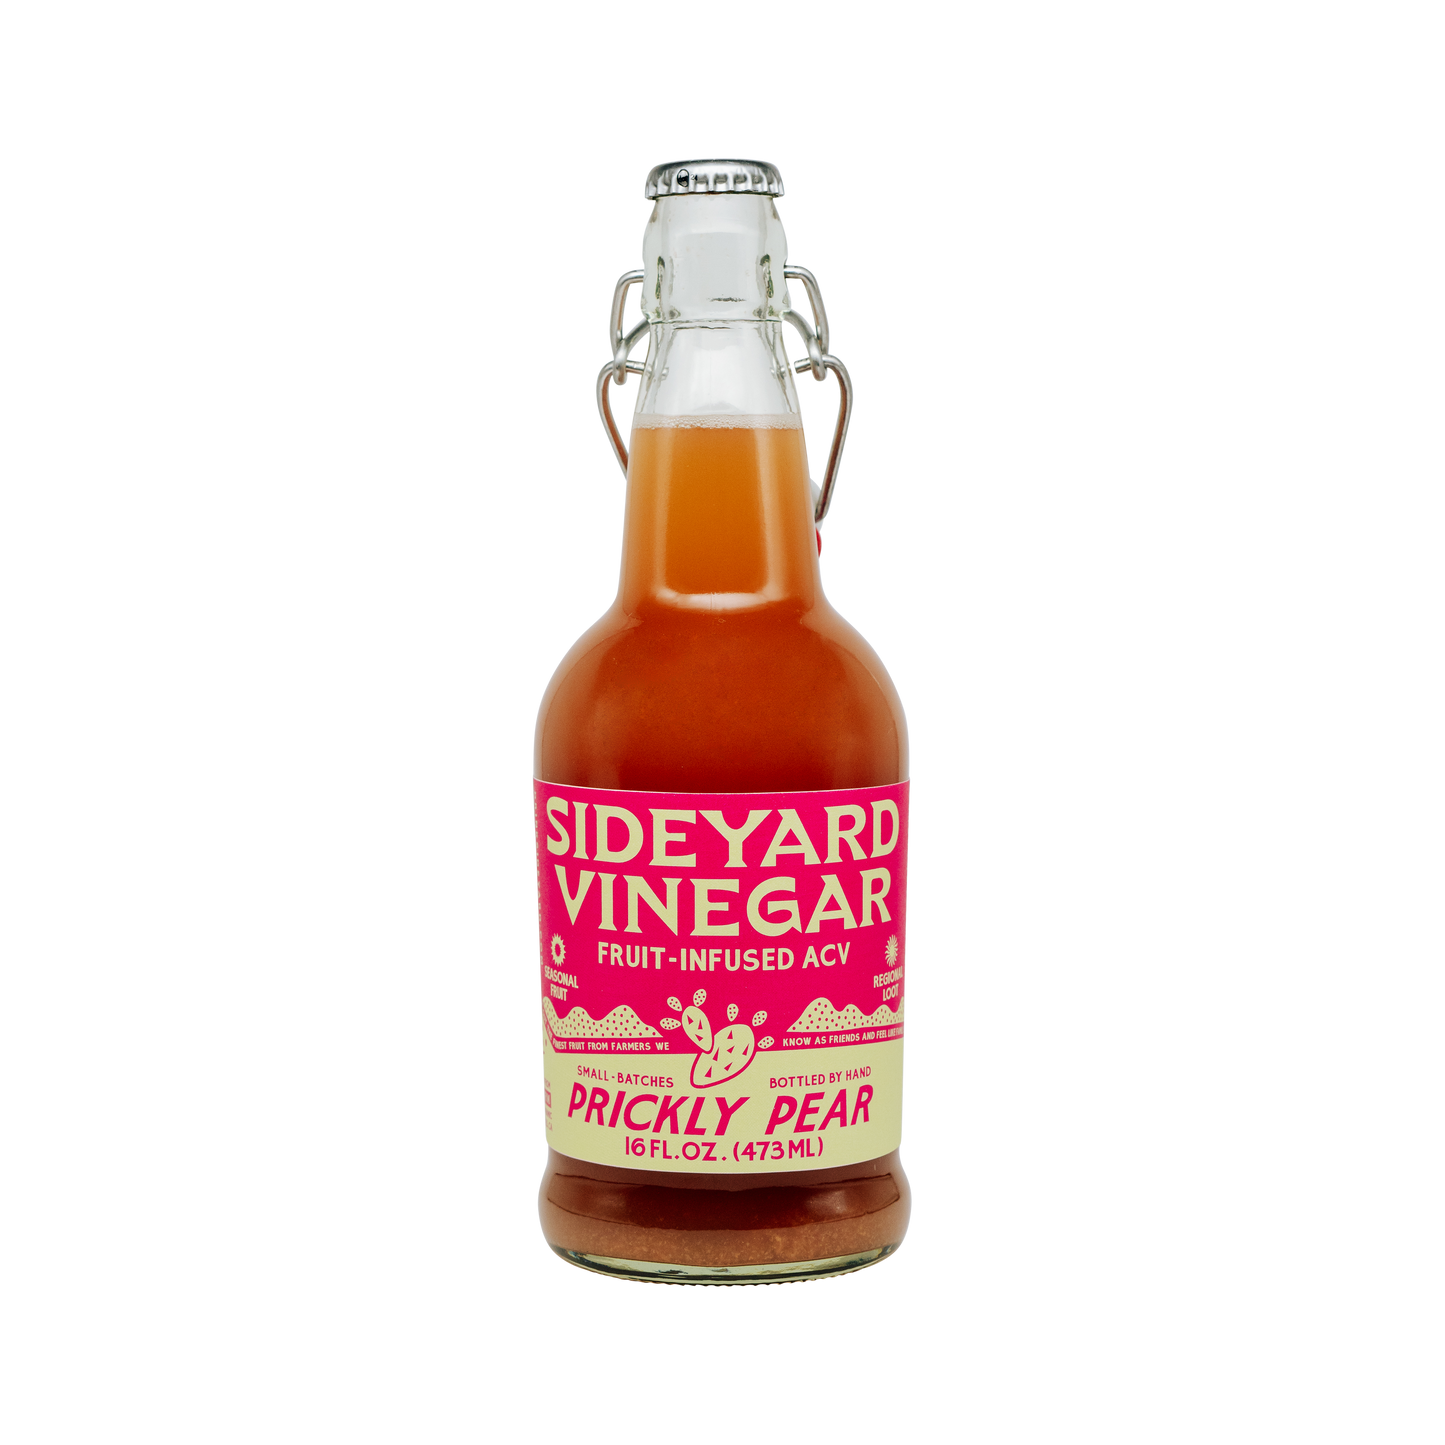 Prickly Pear Infused Vinegar